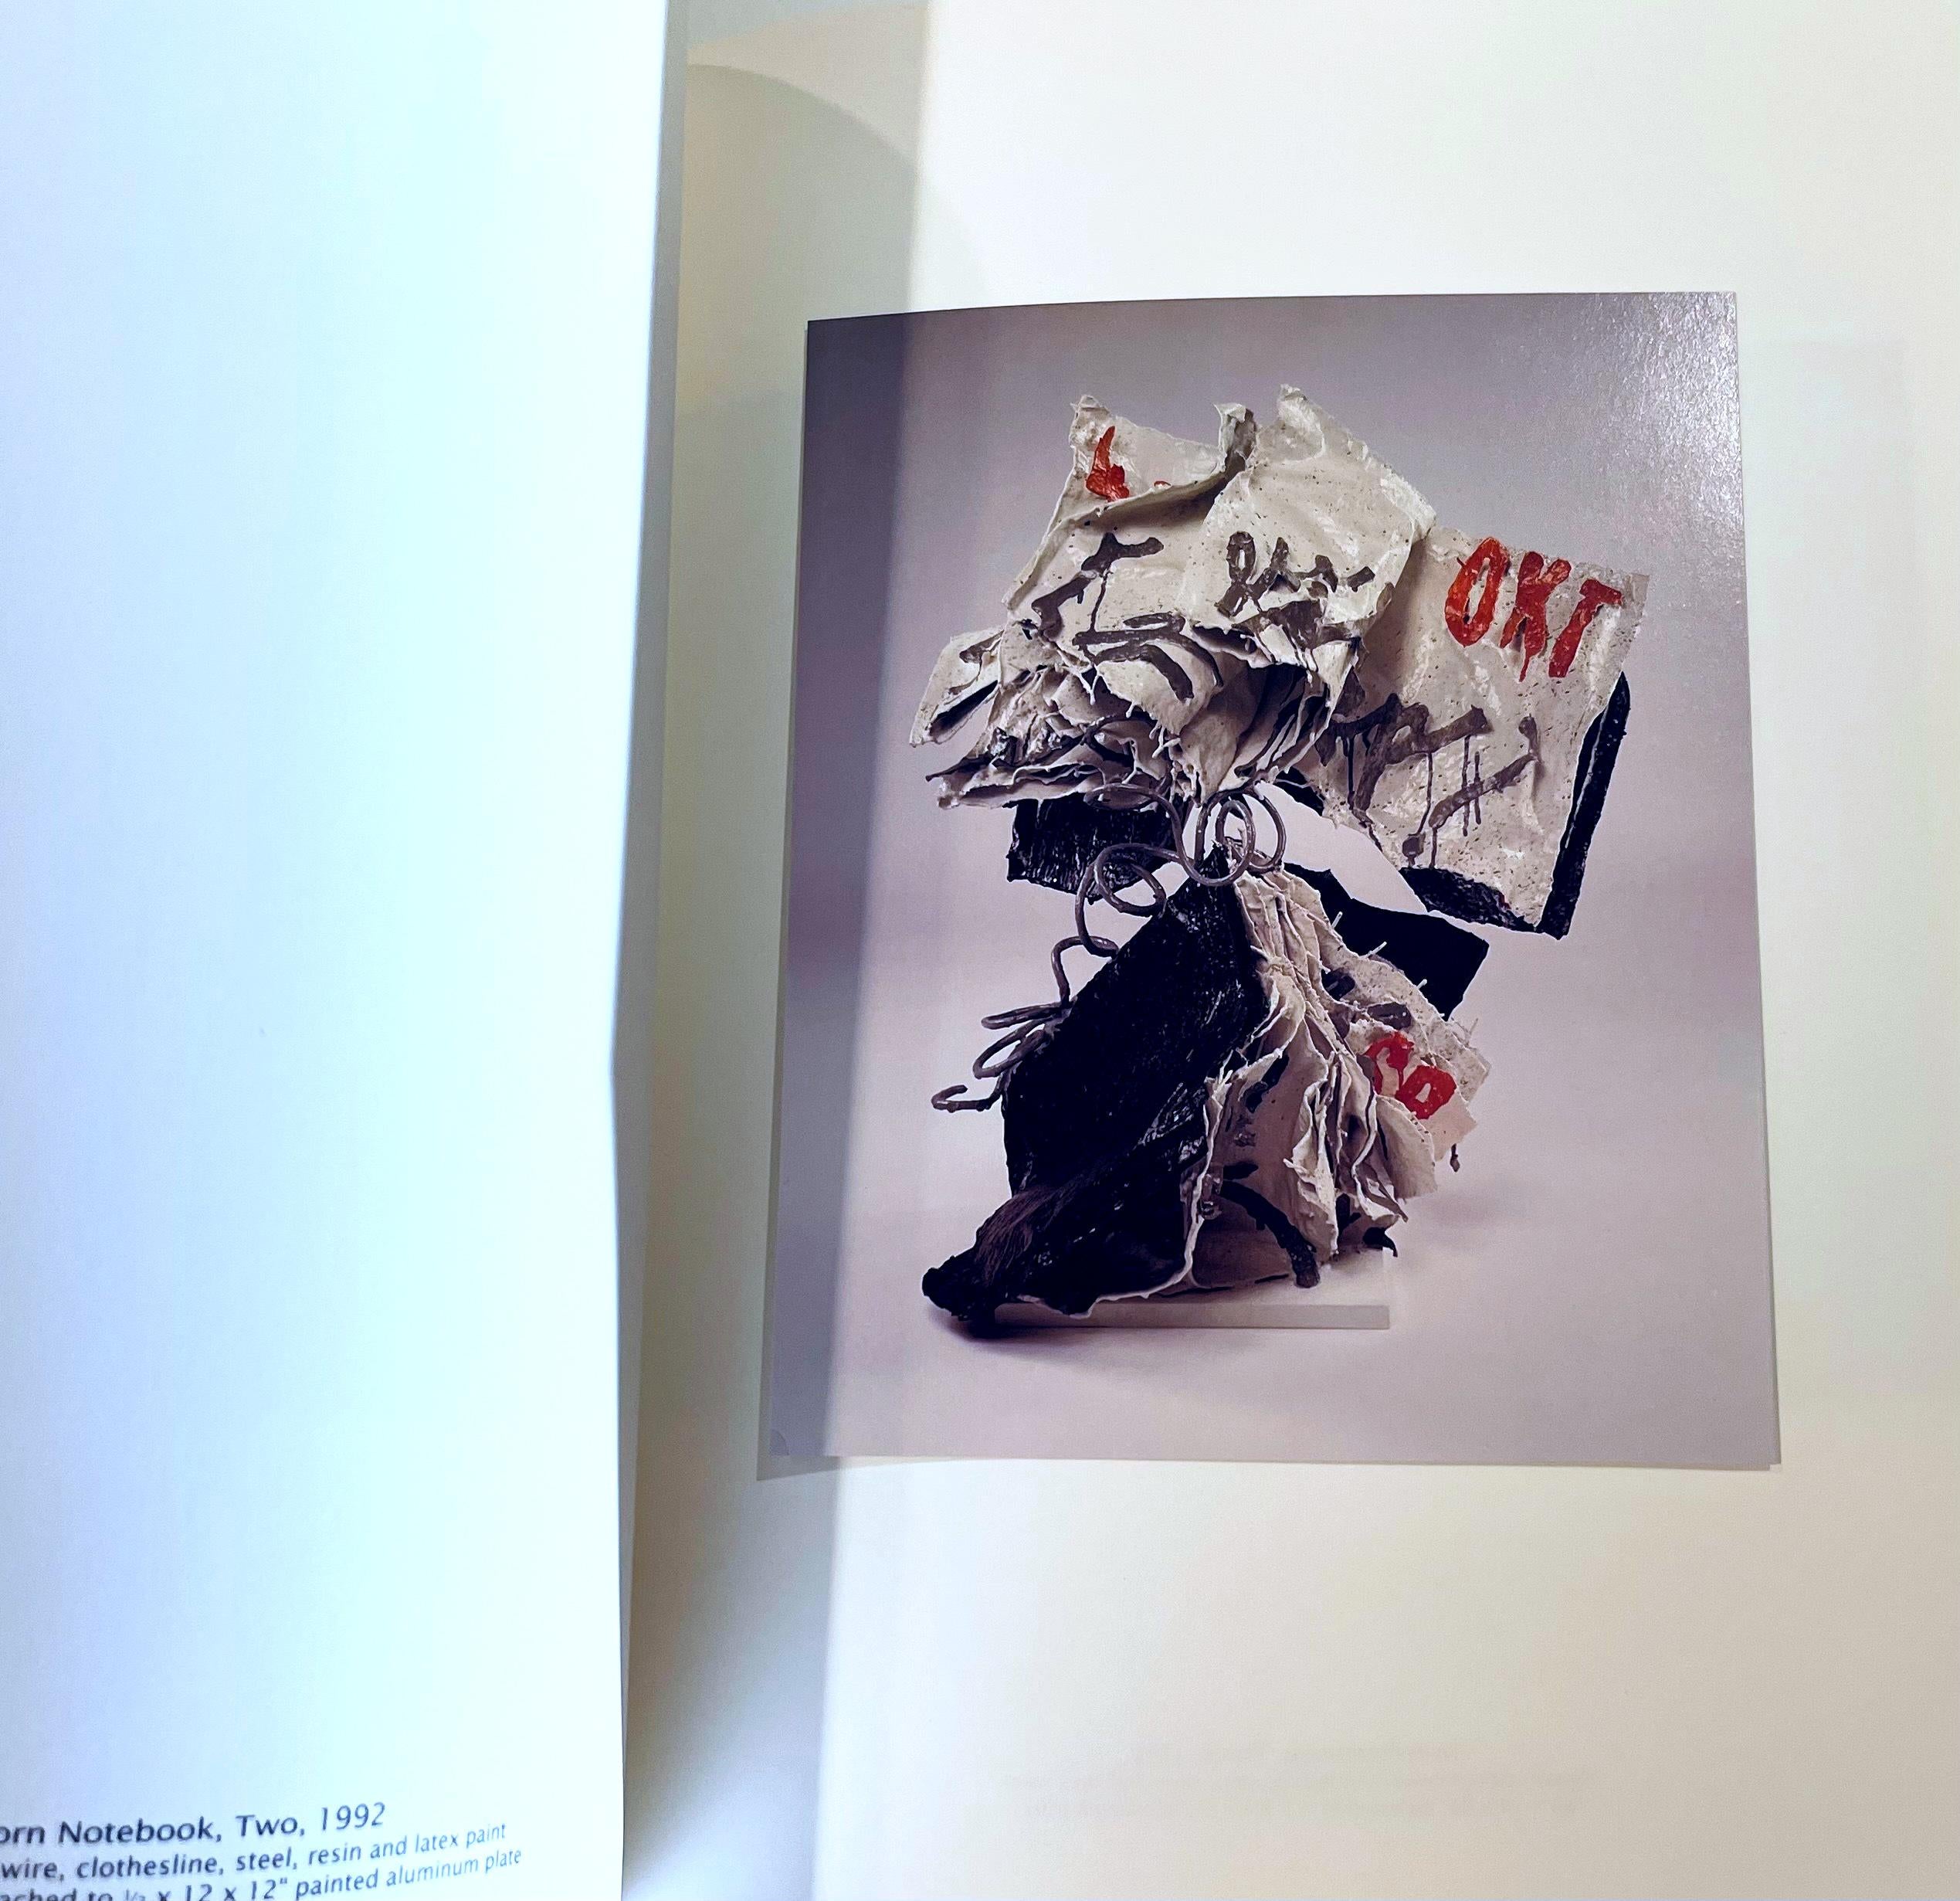 Claes Oldenburg, Claes Oldenburg (Hand signed by Claes Oldenburg), 1992 For Sale 5